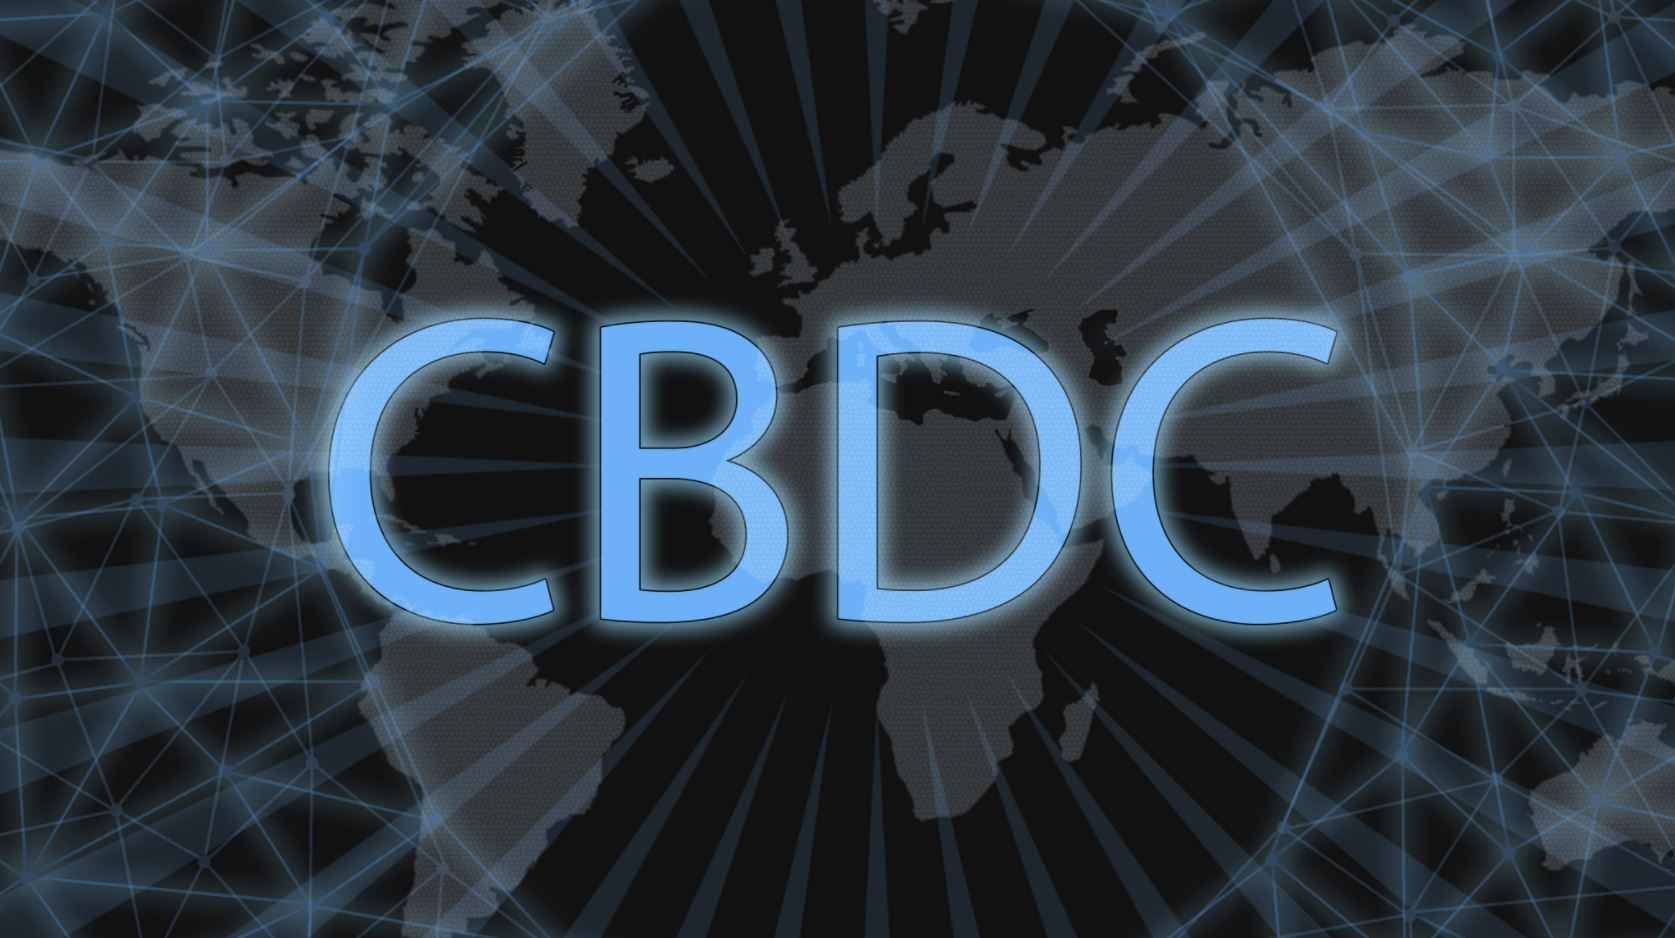 ارز دیجیتال بانک مرکزی یا CBDC چیست؟